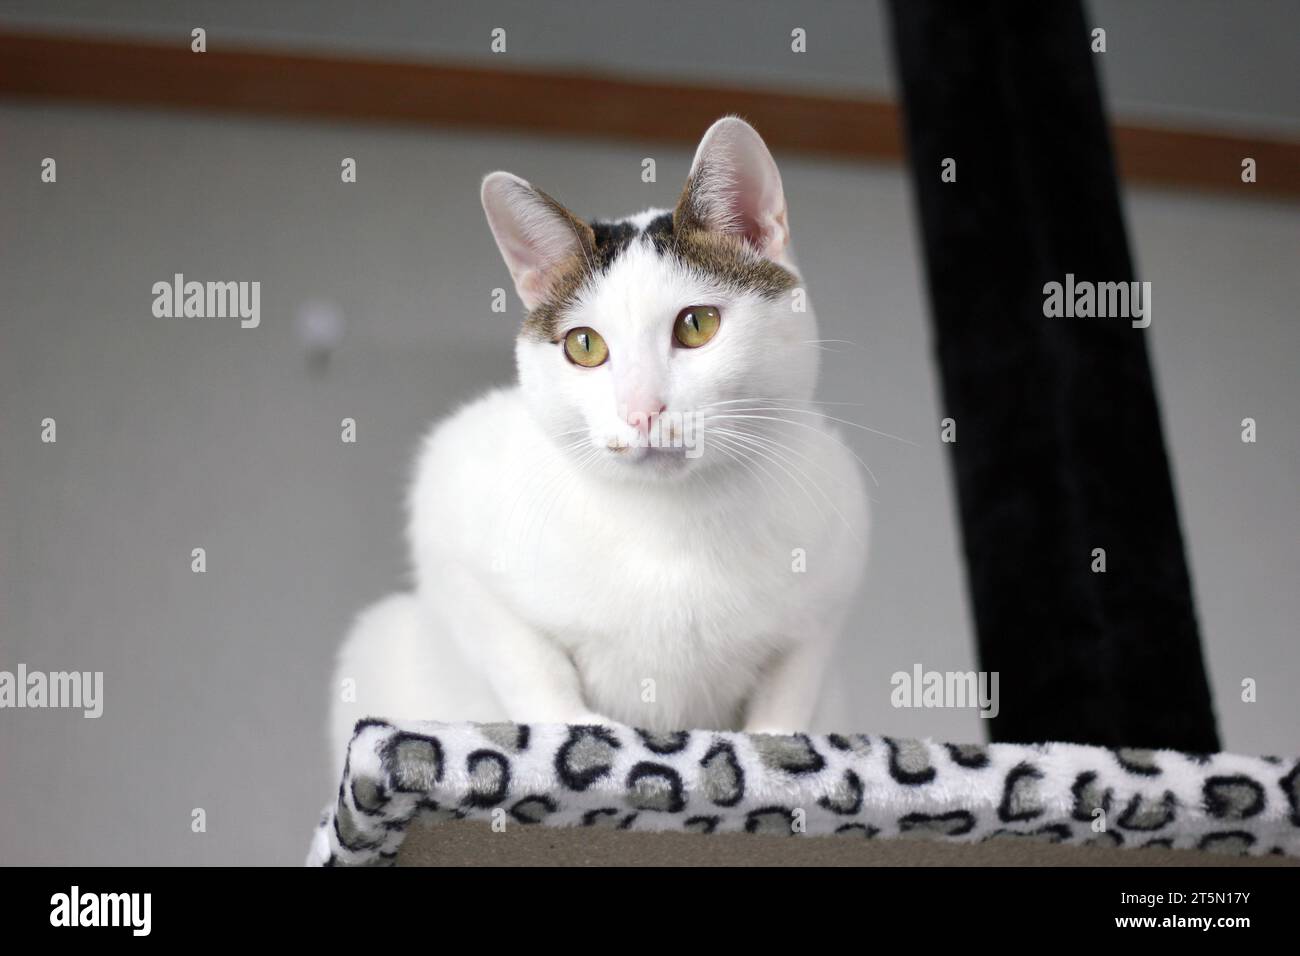 Simpatico gatto di Bobtail giapponese che gioca su una torre di gatto con stampa leopardata Foto Stock